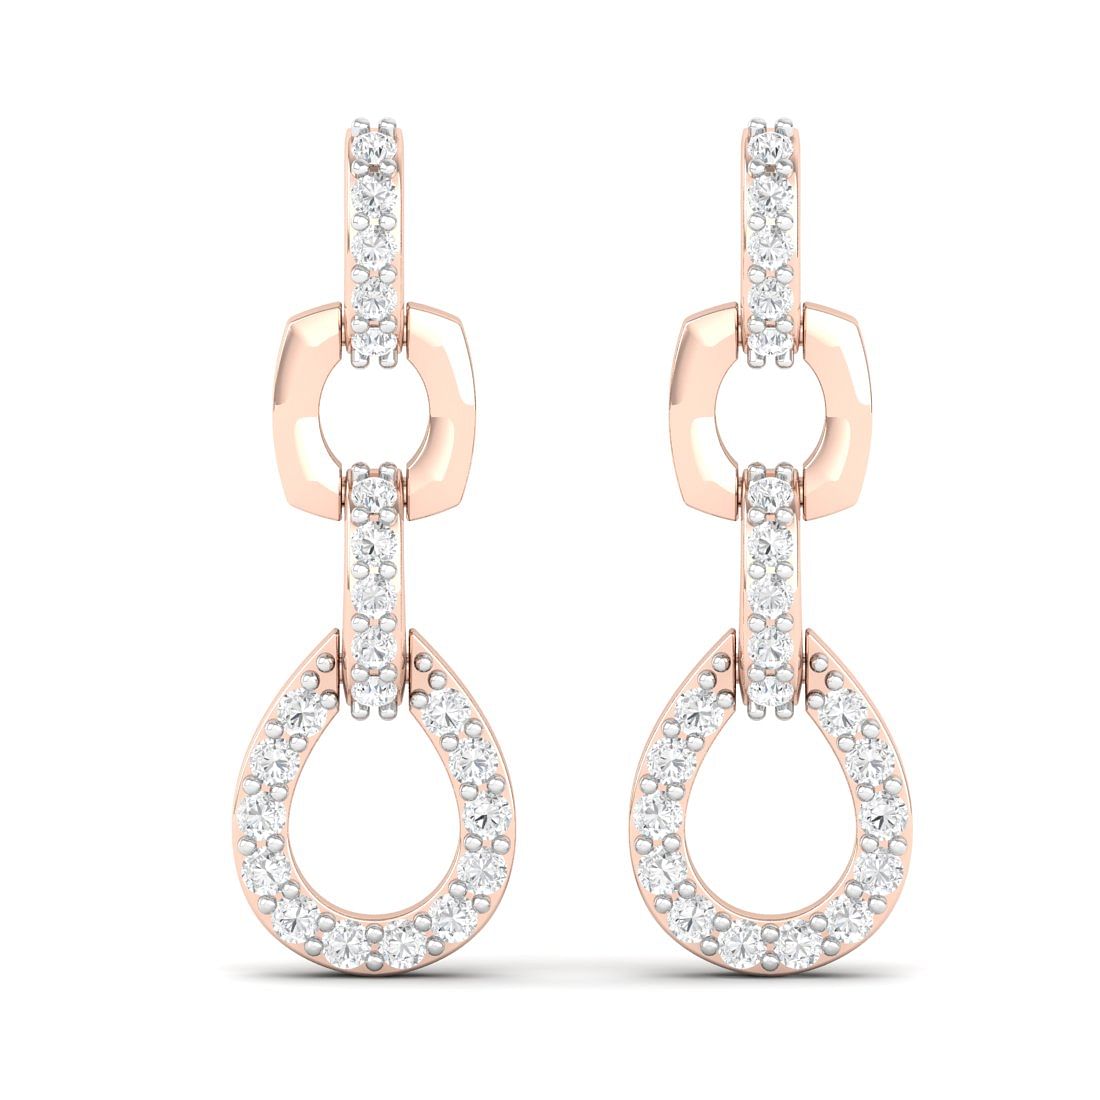 10k Rose Gold Drops Of Heaven Diamond Earrings For Gift